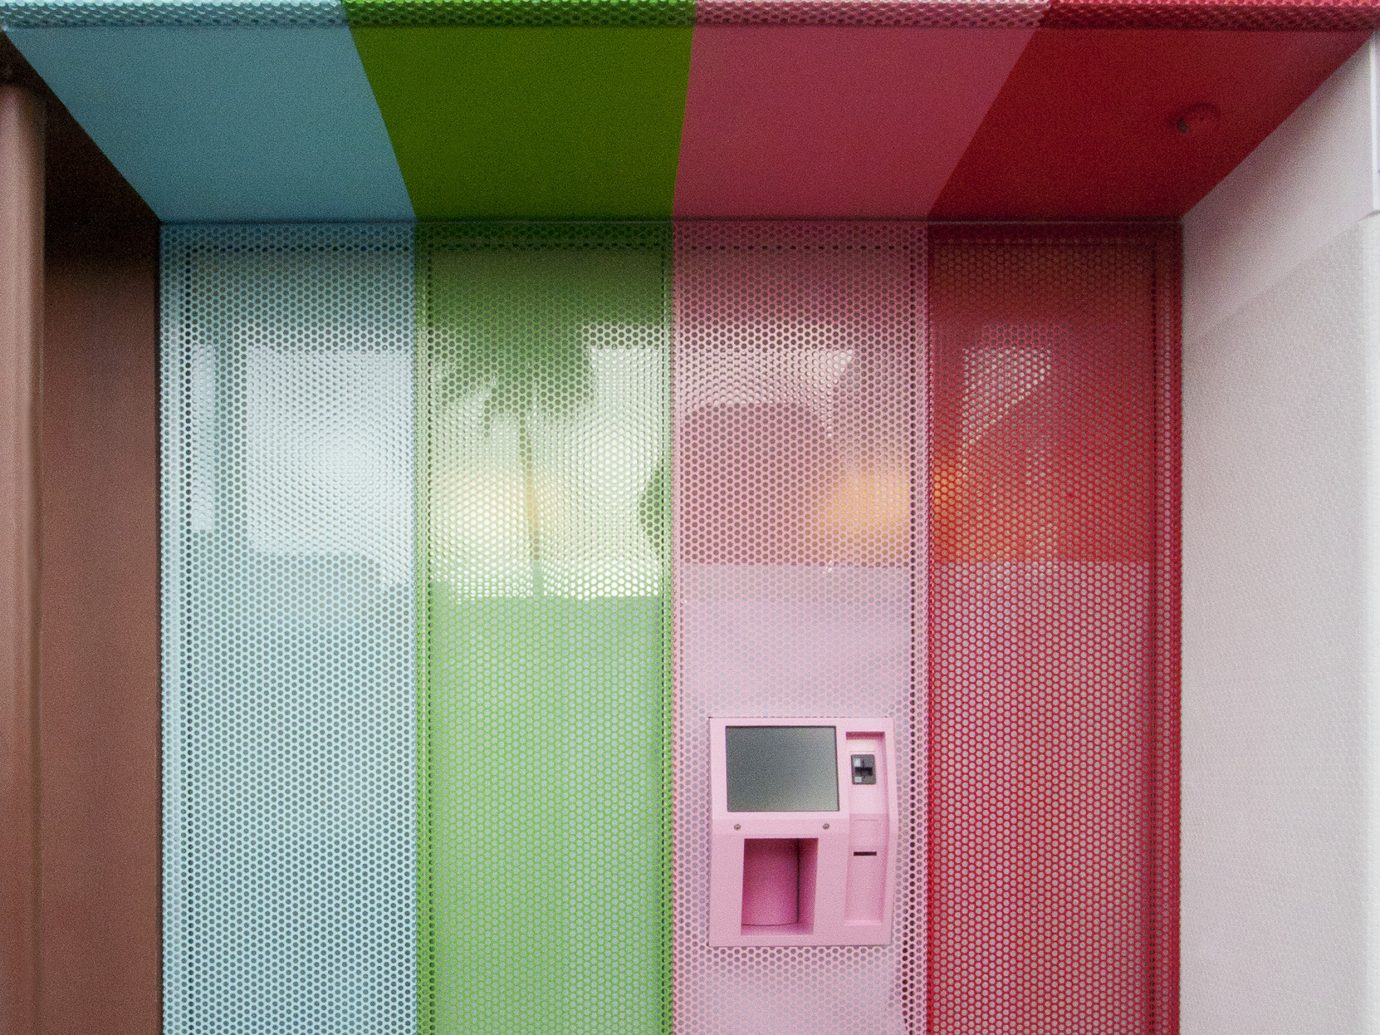 Food + Drink Trip Ideas color wall interior design Design window covering facade door